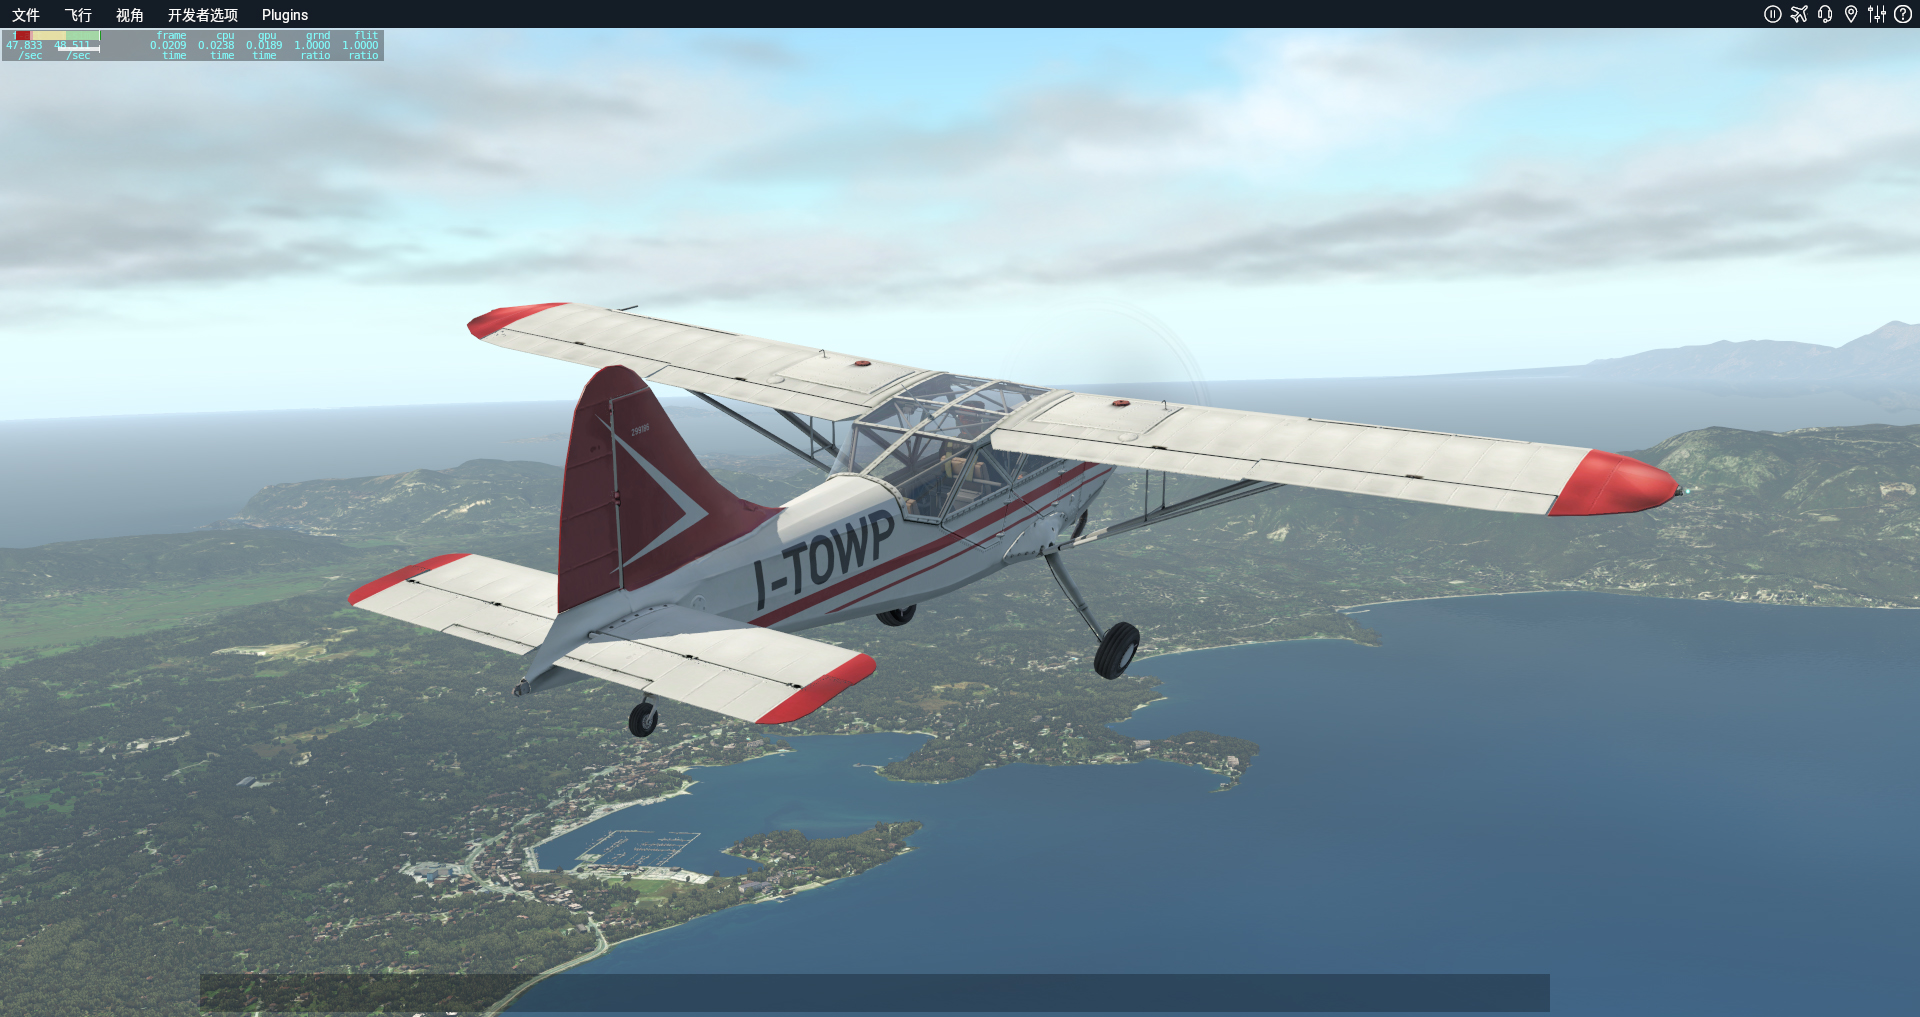 XP11自带小飞机科孚岛随意飞行美图-9169 